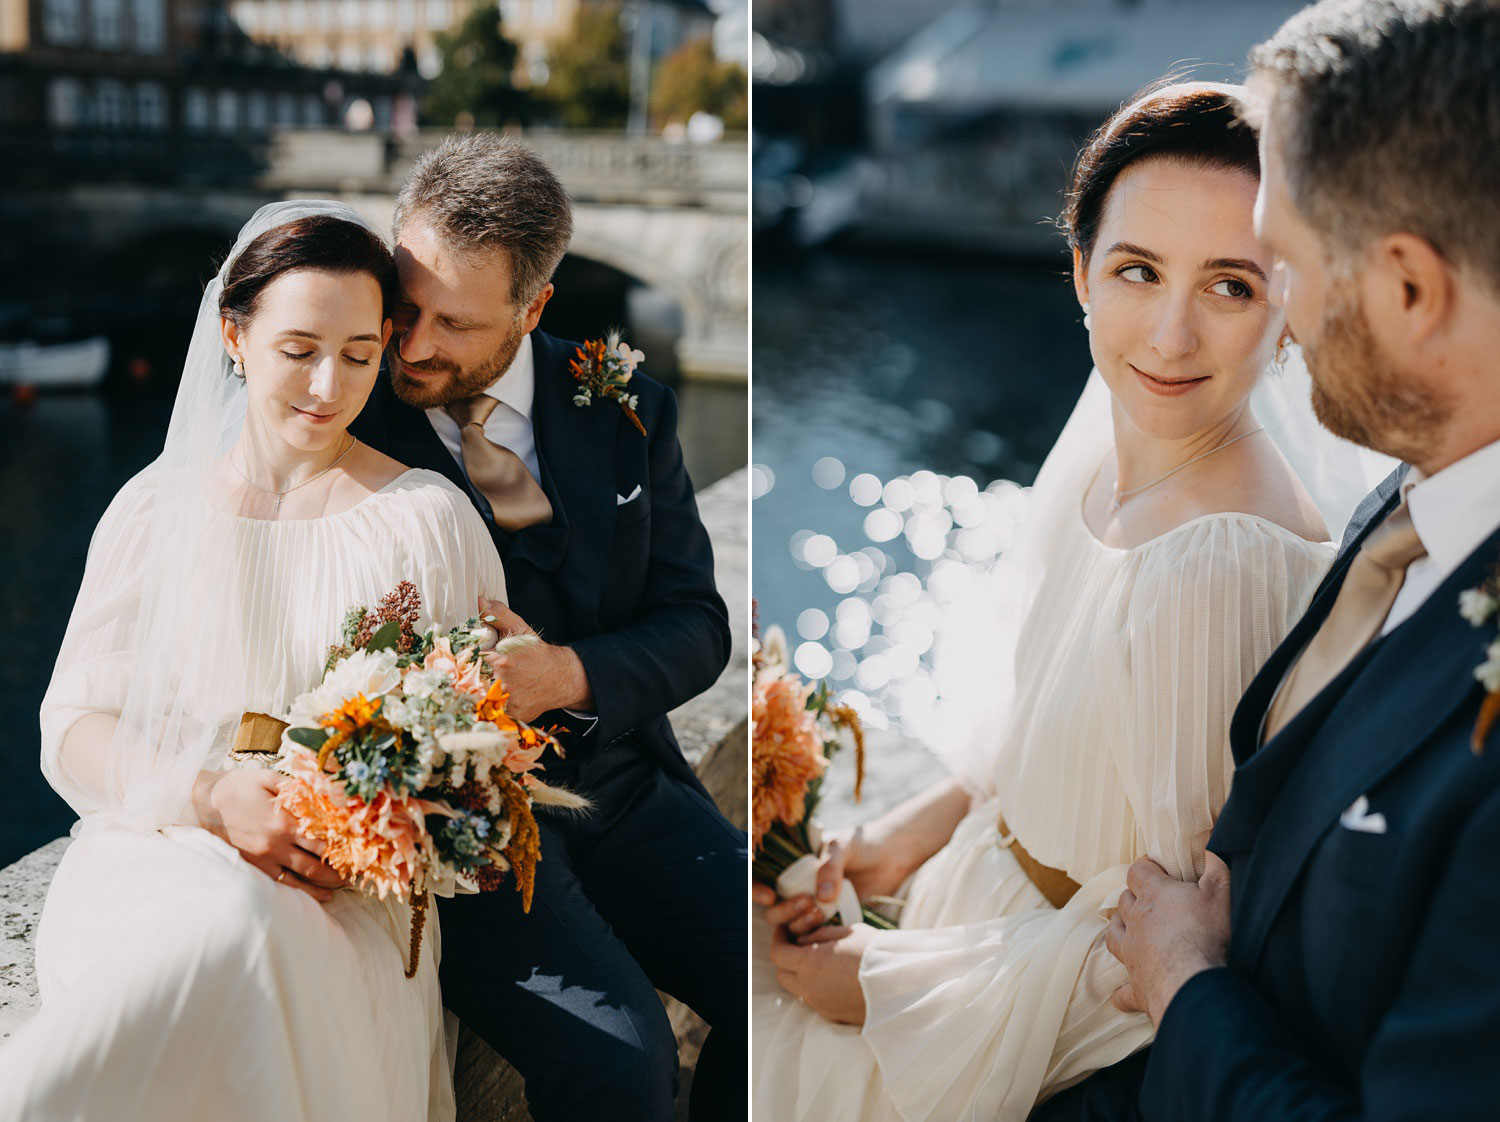 Intimate Moment Between Bride and Groom in Copenhagen